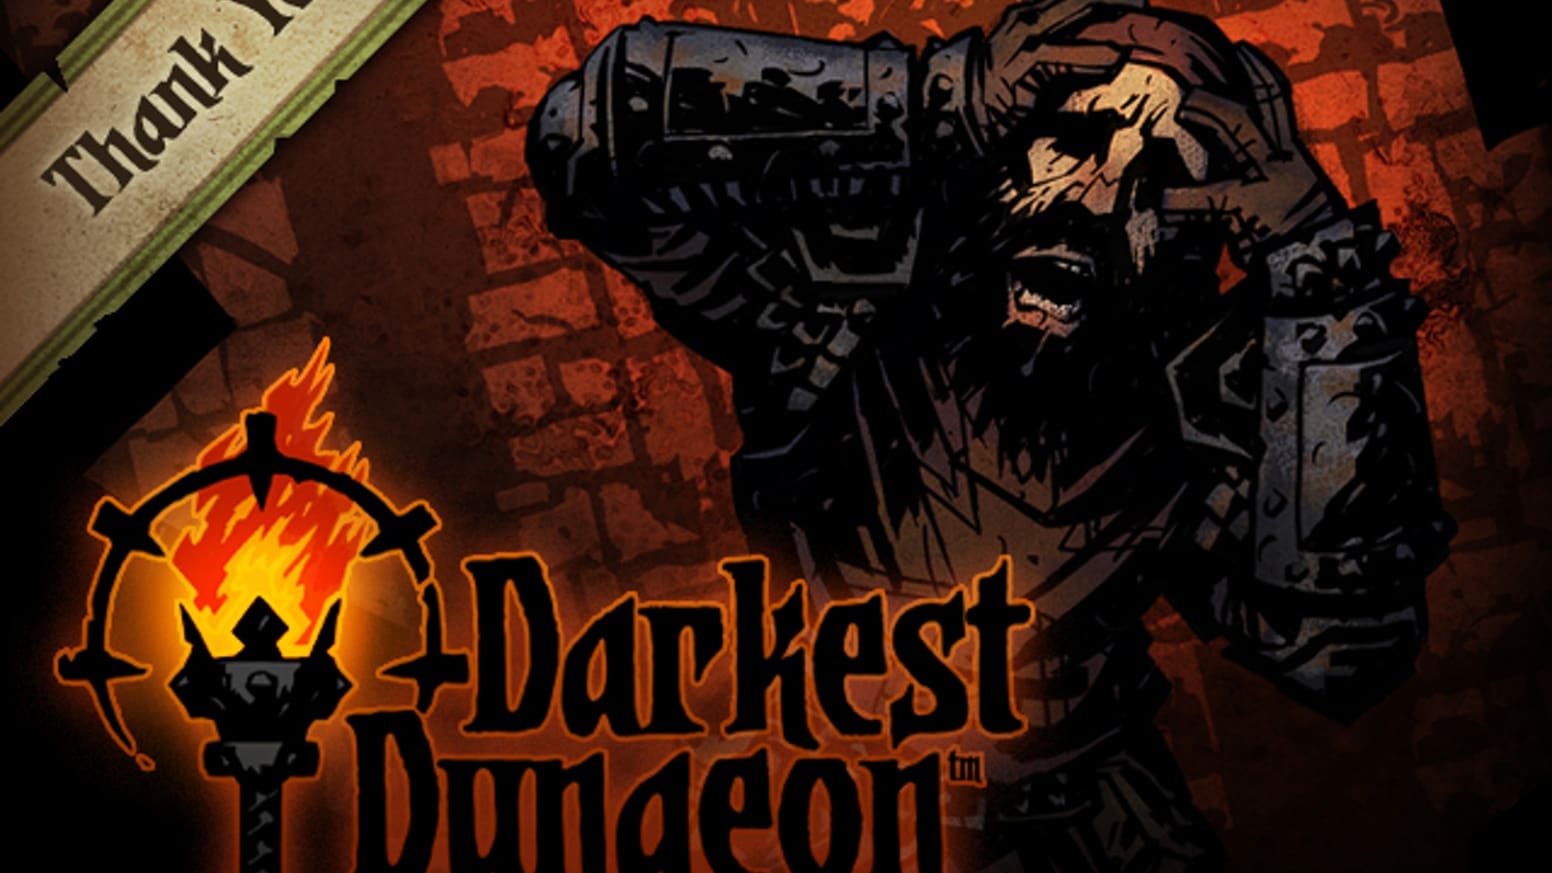 darkest dungeon switch patch